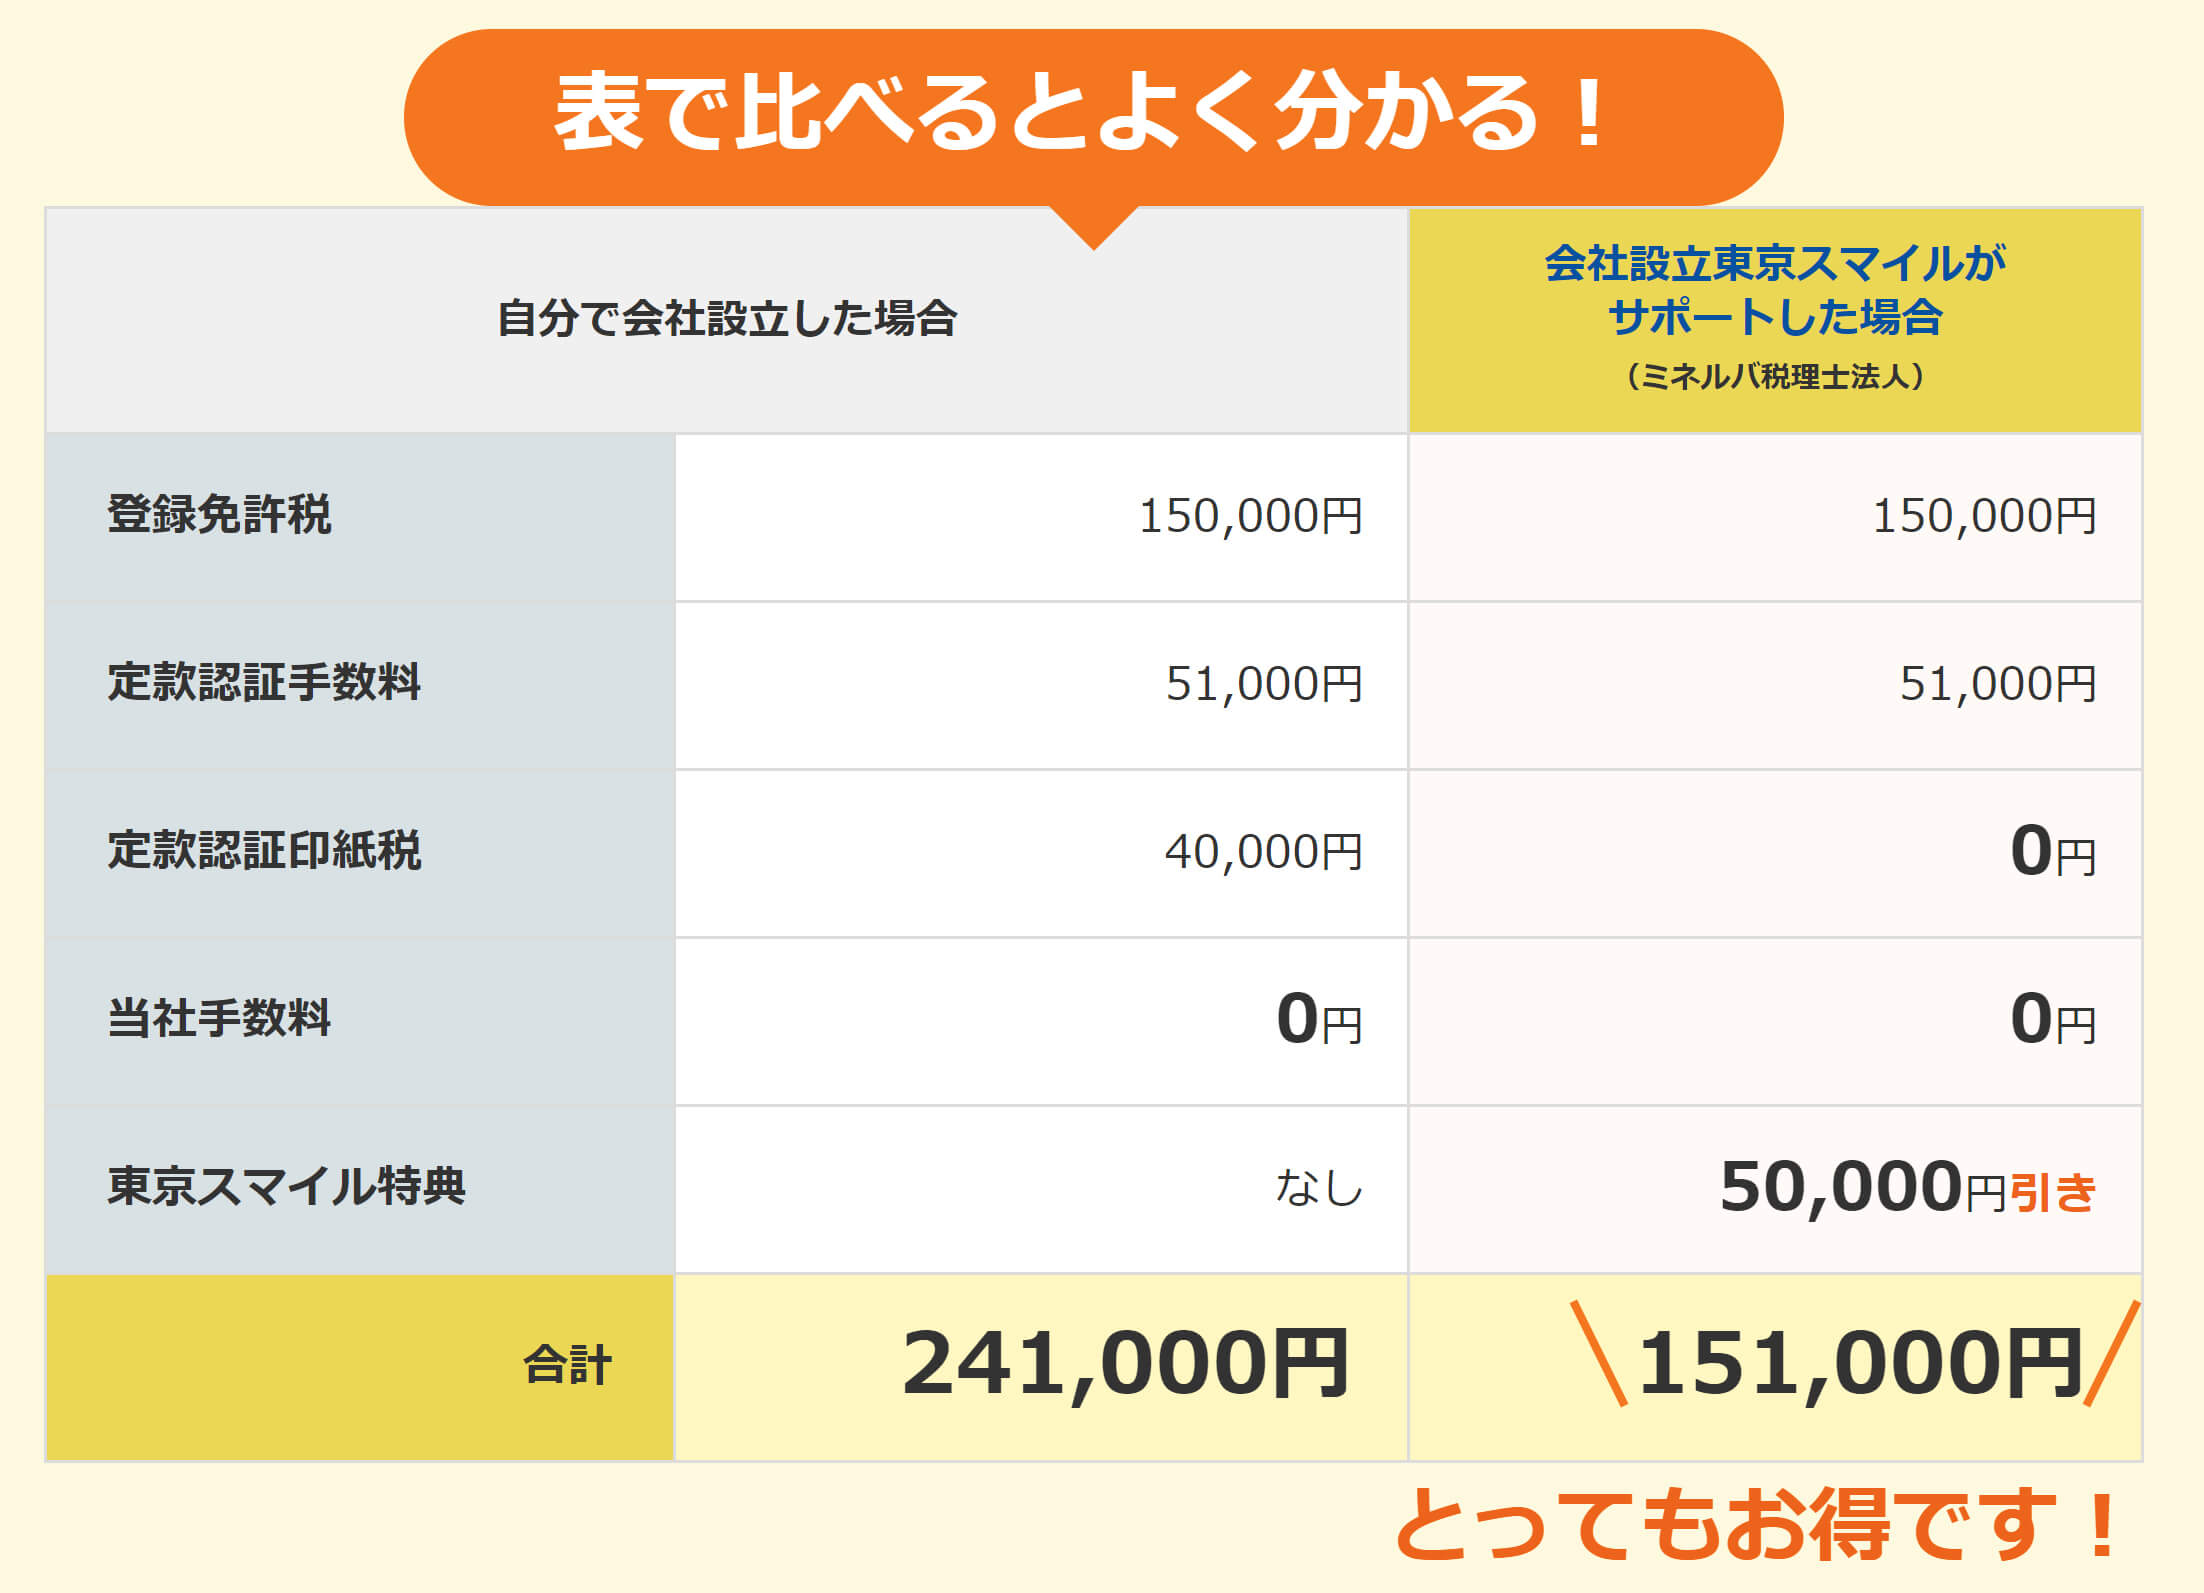 定款認証印紙税0円、5万円引き。とってもお得です！